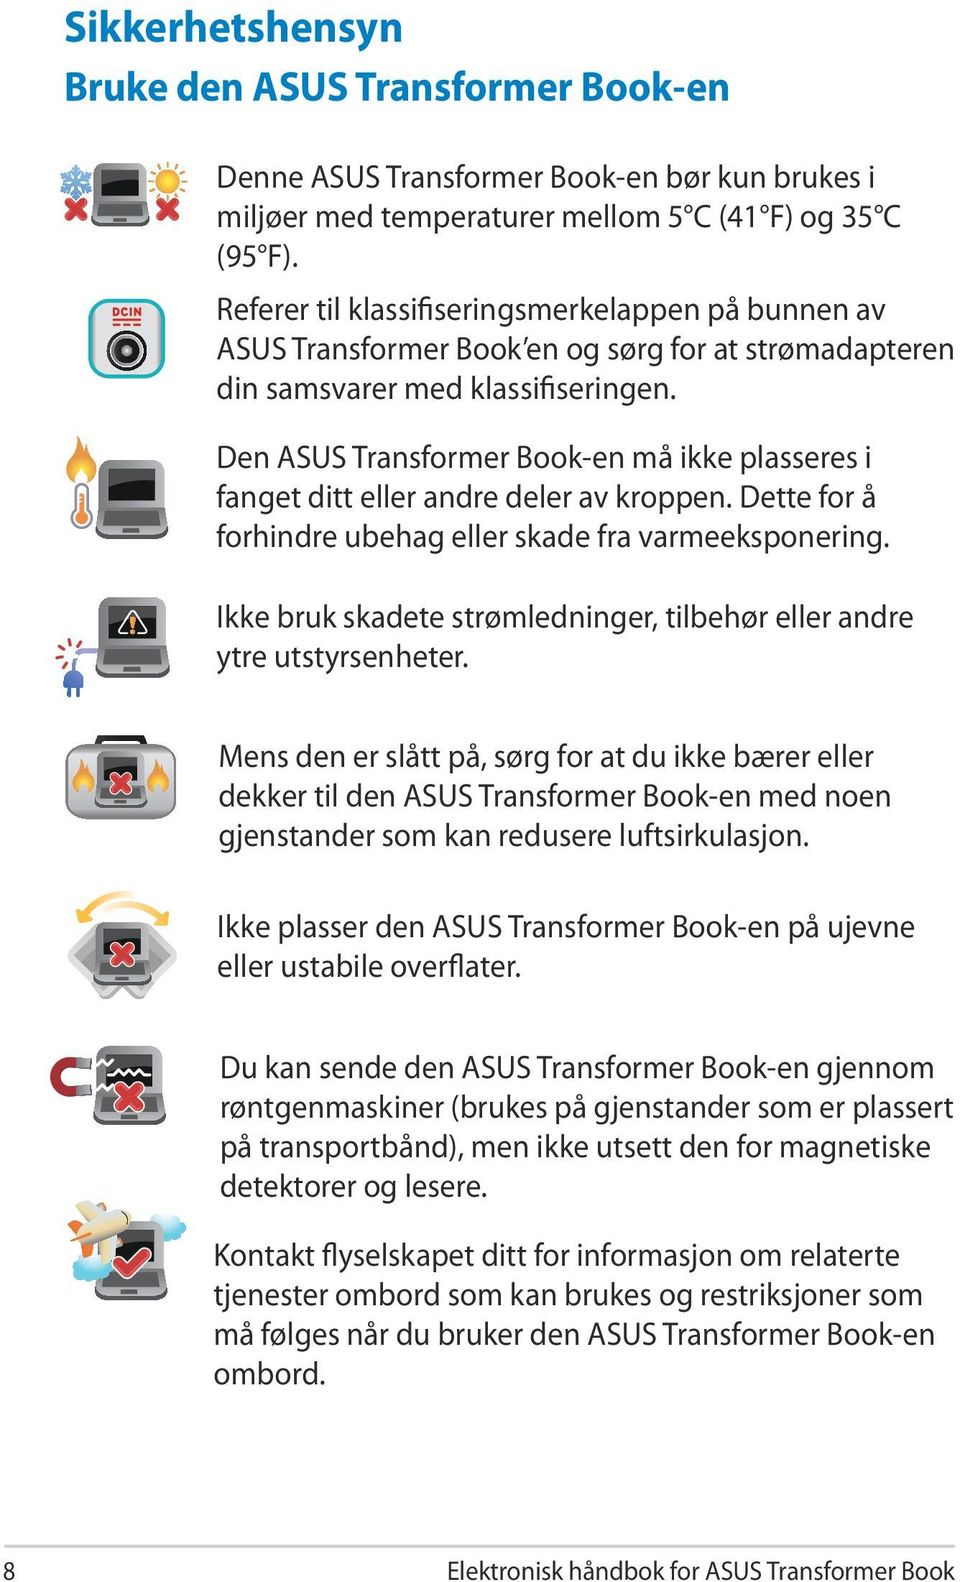 Den ASUS Transformer Book-en må ikke plasseres i fanget ditt eller andre deler av kroppen. Dette for å forhindre ubehag eller skade fra varmeeksponering.